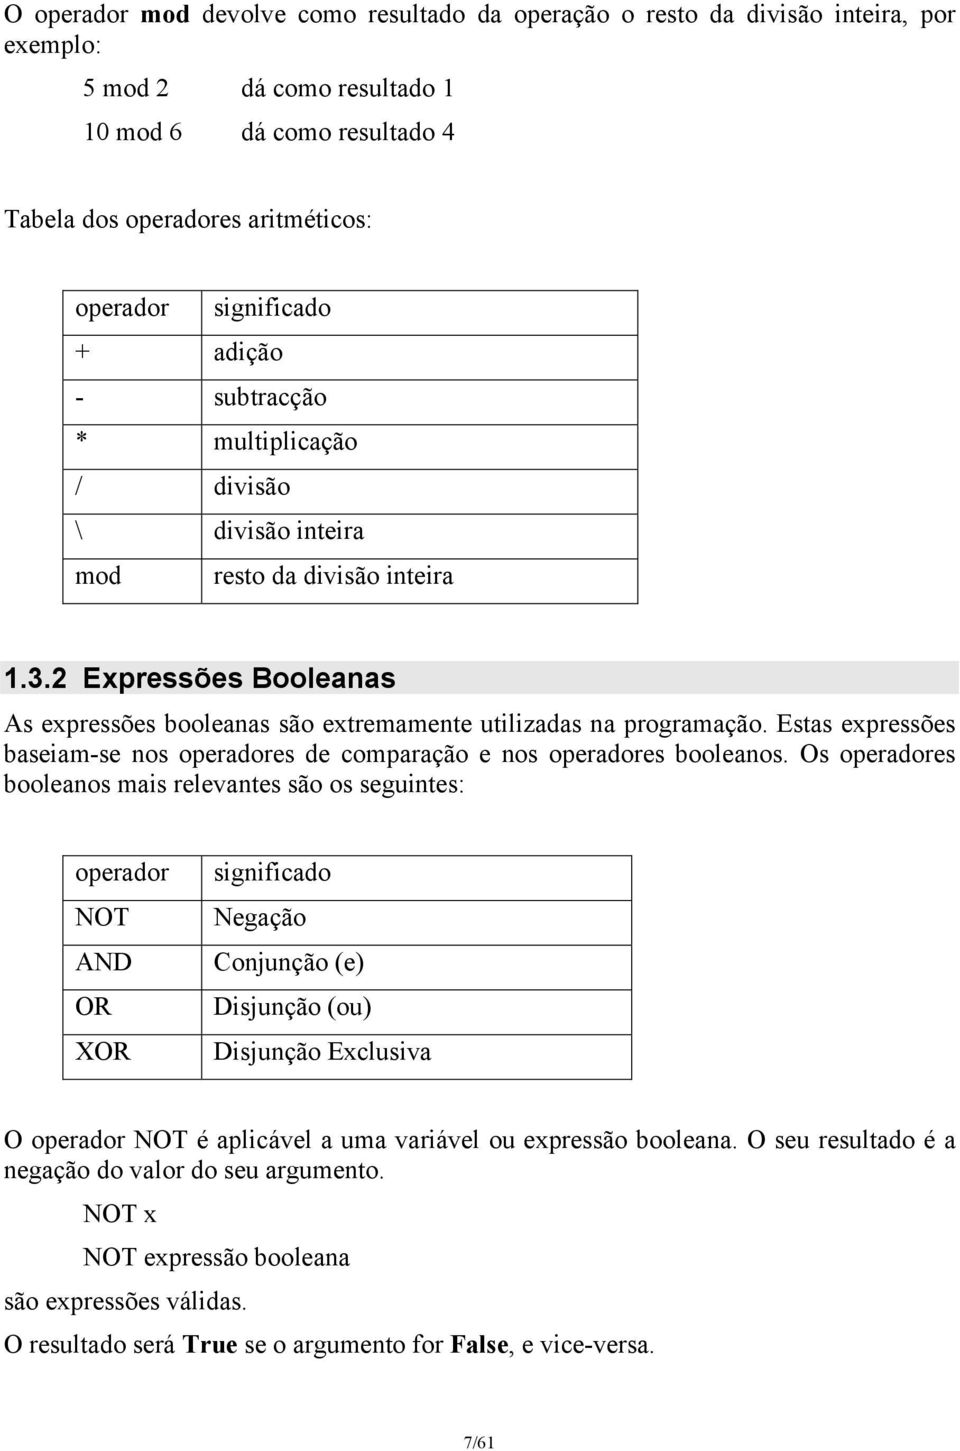 2 Expressões Booleanas As expressões booleanas são extremamente utilizadas na programação. Estas expressões baseiam-se nos operadores de comparação e nos operadores booleanos.